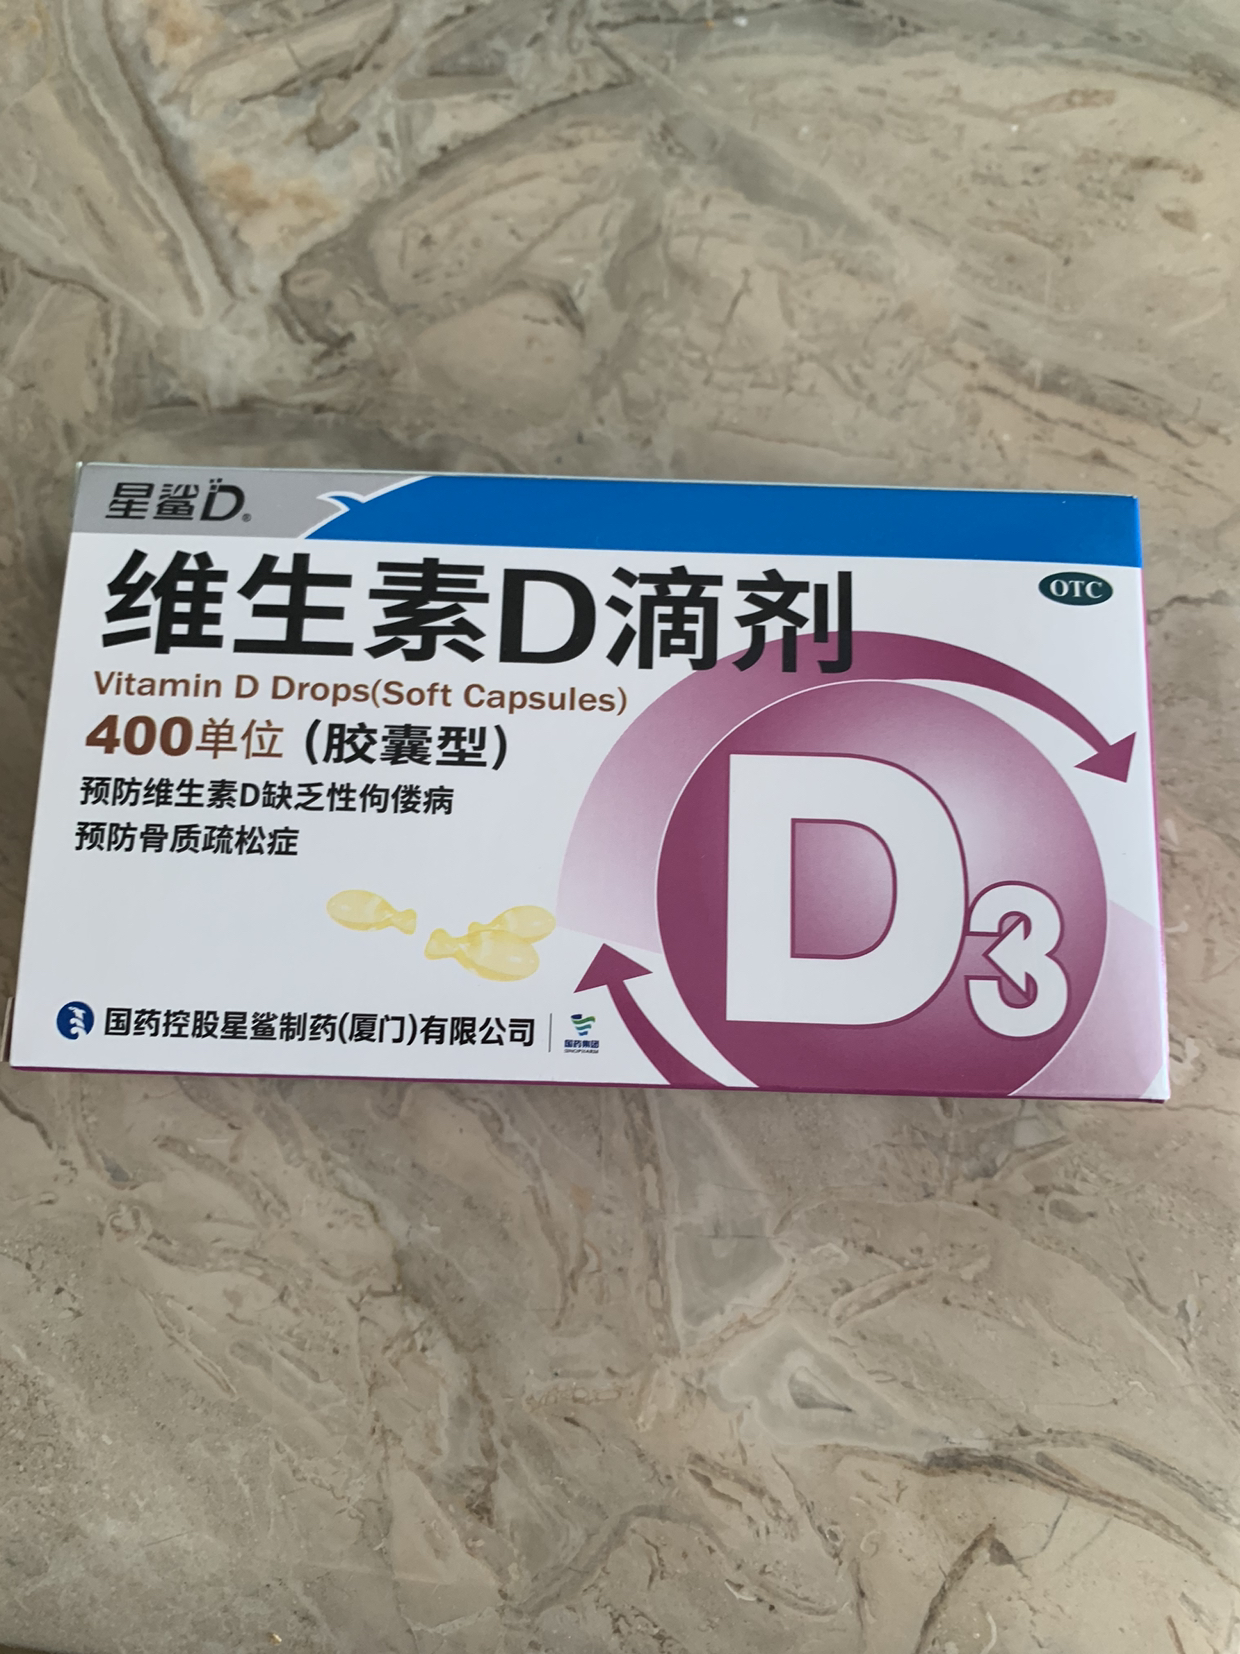 星鲨D维生素D滴剂(胶囊型) 36粒 用于预防和治疗维生素D缺乏症 如佝偻病 d3晒单图